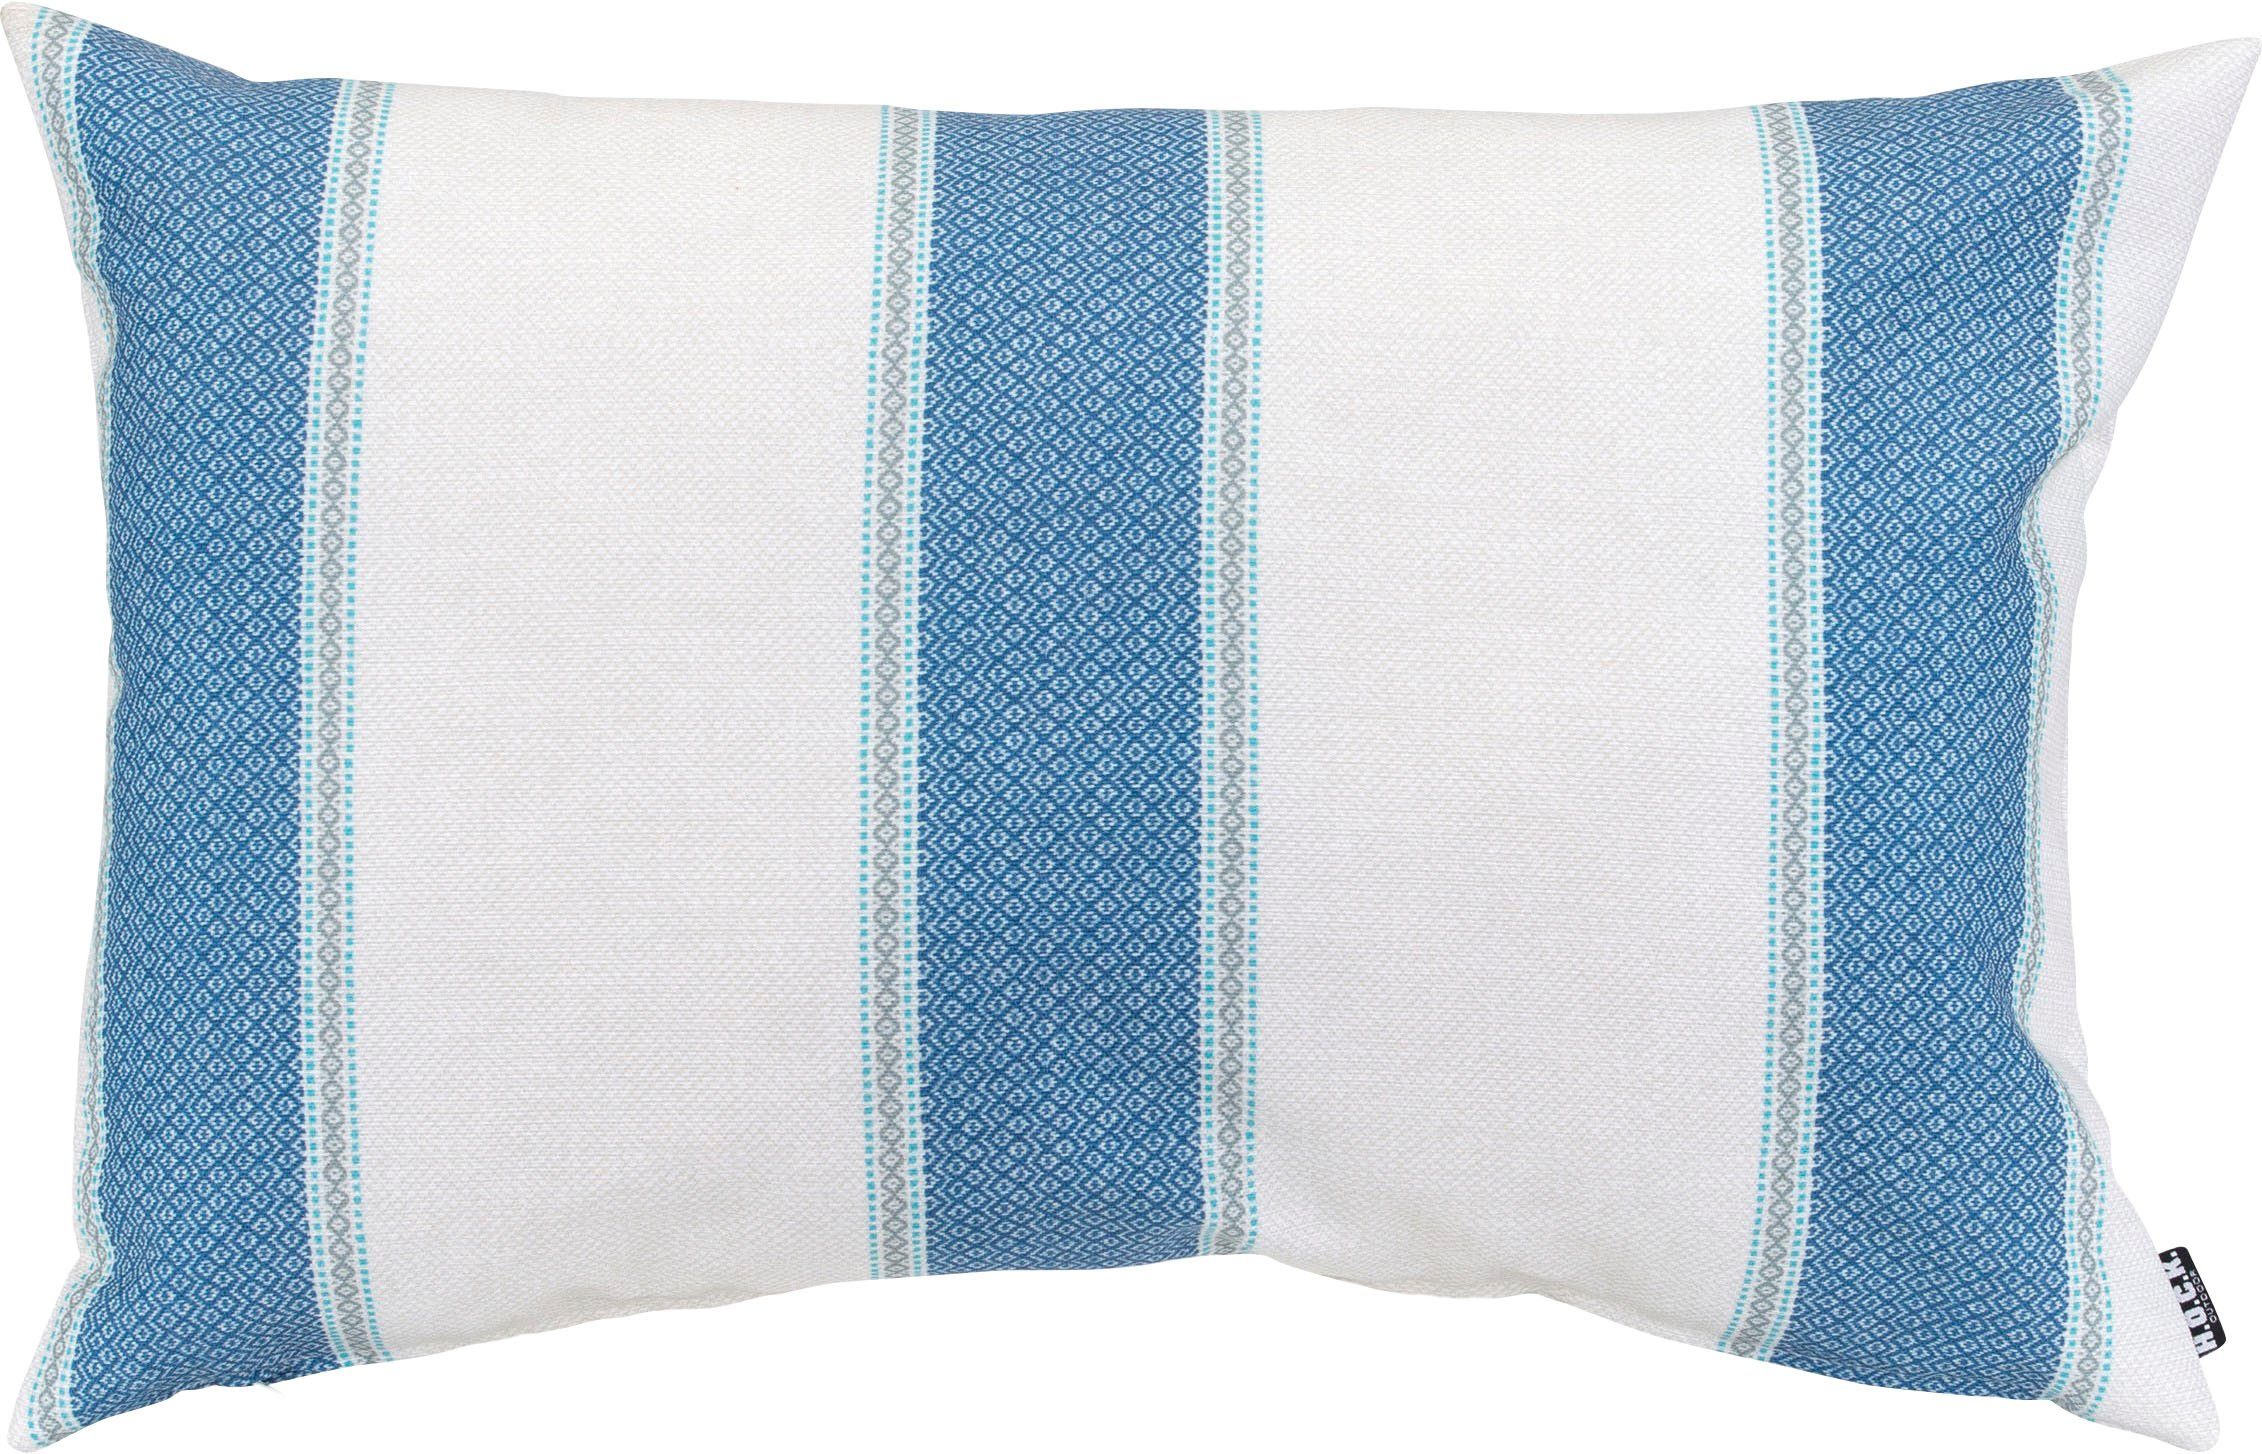 H.O.C.K. Dekokissen Forna, mit farbigen Streifen, Kissenhülle mit Füllung, 1 Stück blau/weiß/weiß